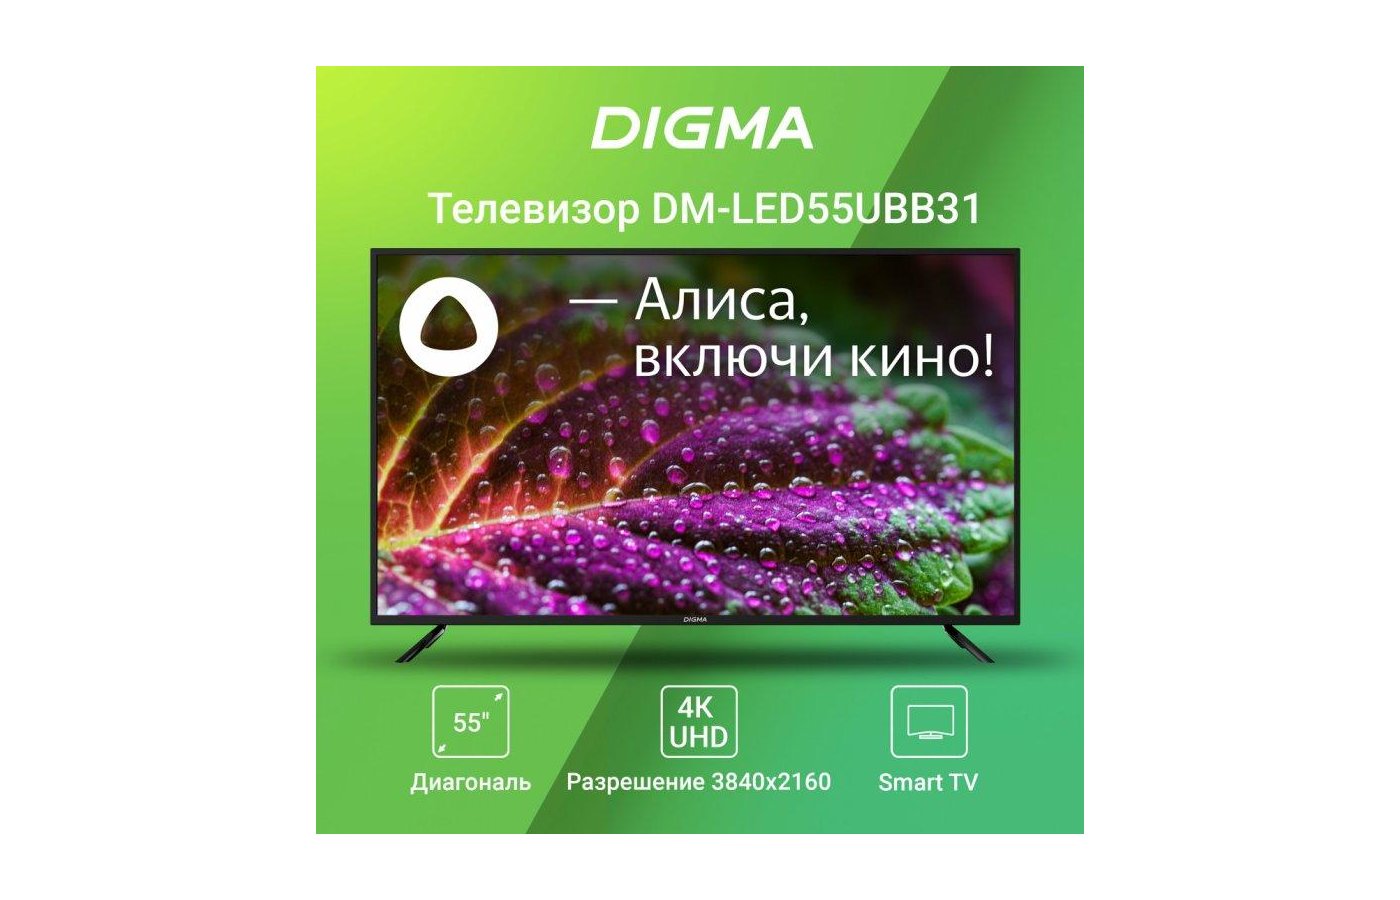 Digma pro телевизор 43c. Digma DM-led55ubb31 55" Алиса. Устранение неисправностей телевизора Digma Smart TV DM-led39r301bt2s. Digma 55 DM-led55ubb31 Smart YAOS помощь в настройки.